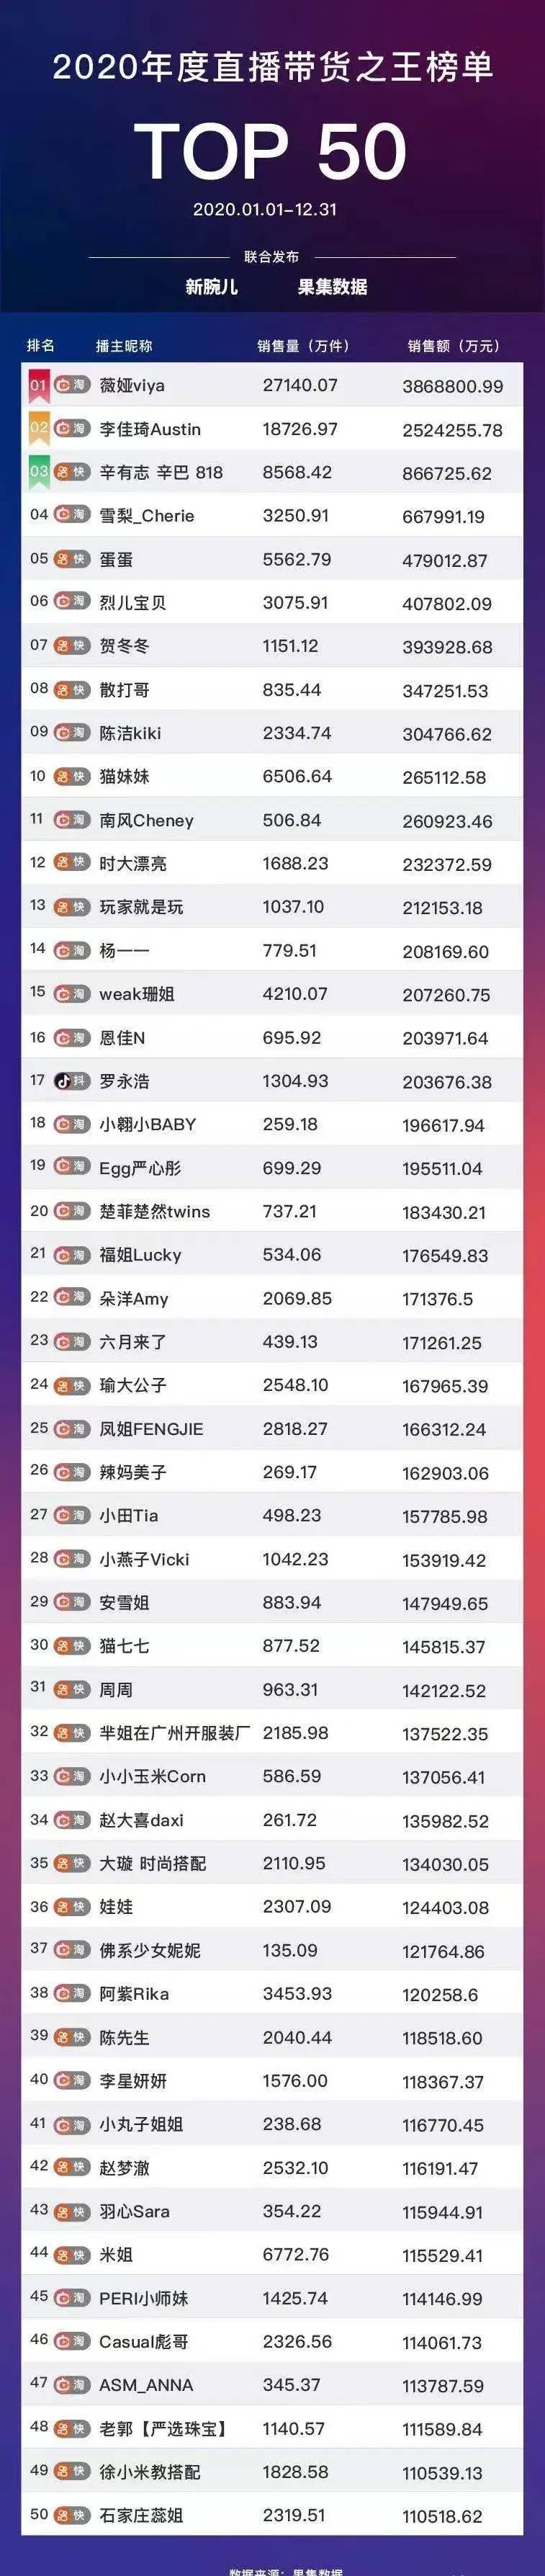 中国网红排行榜_中国网红城市10强排名:一线城市占据前四名,青岛和郑州